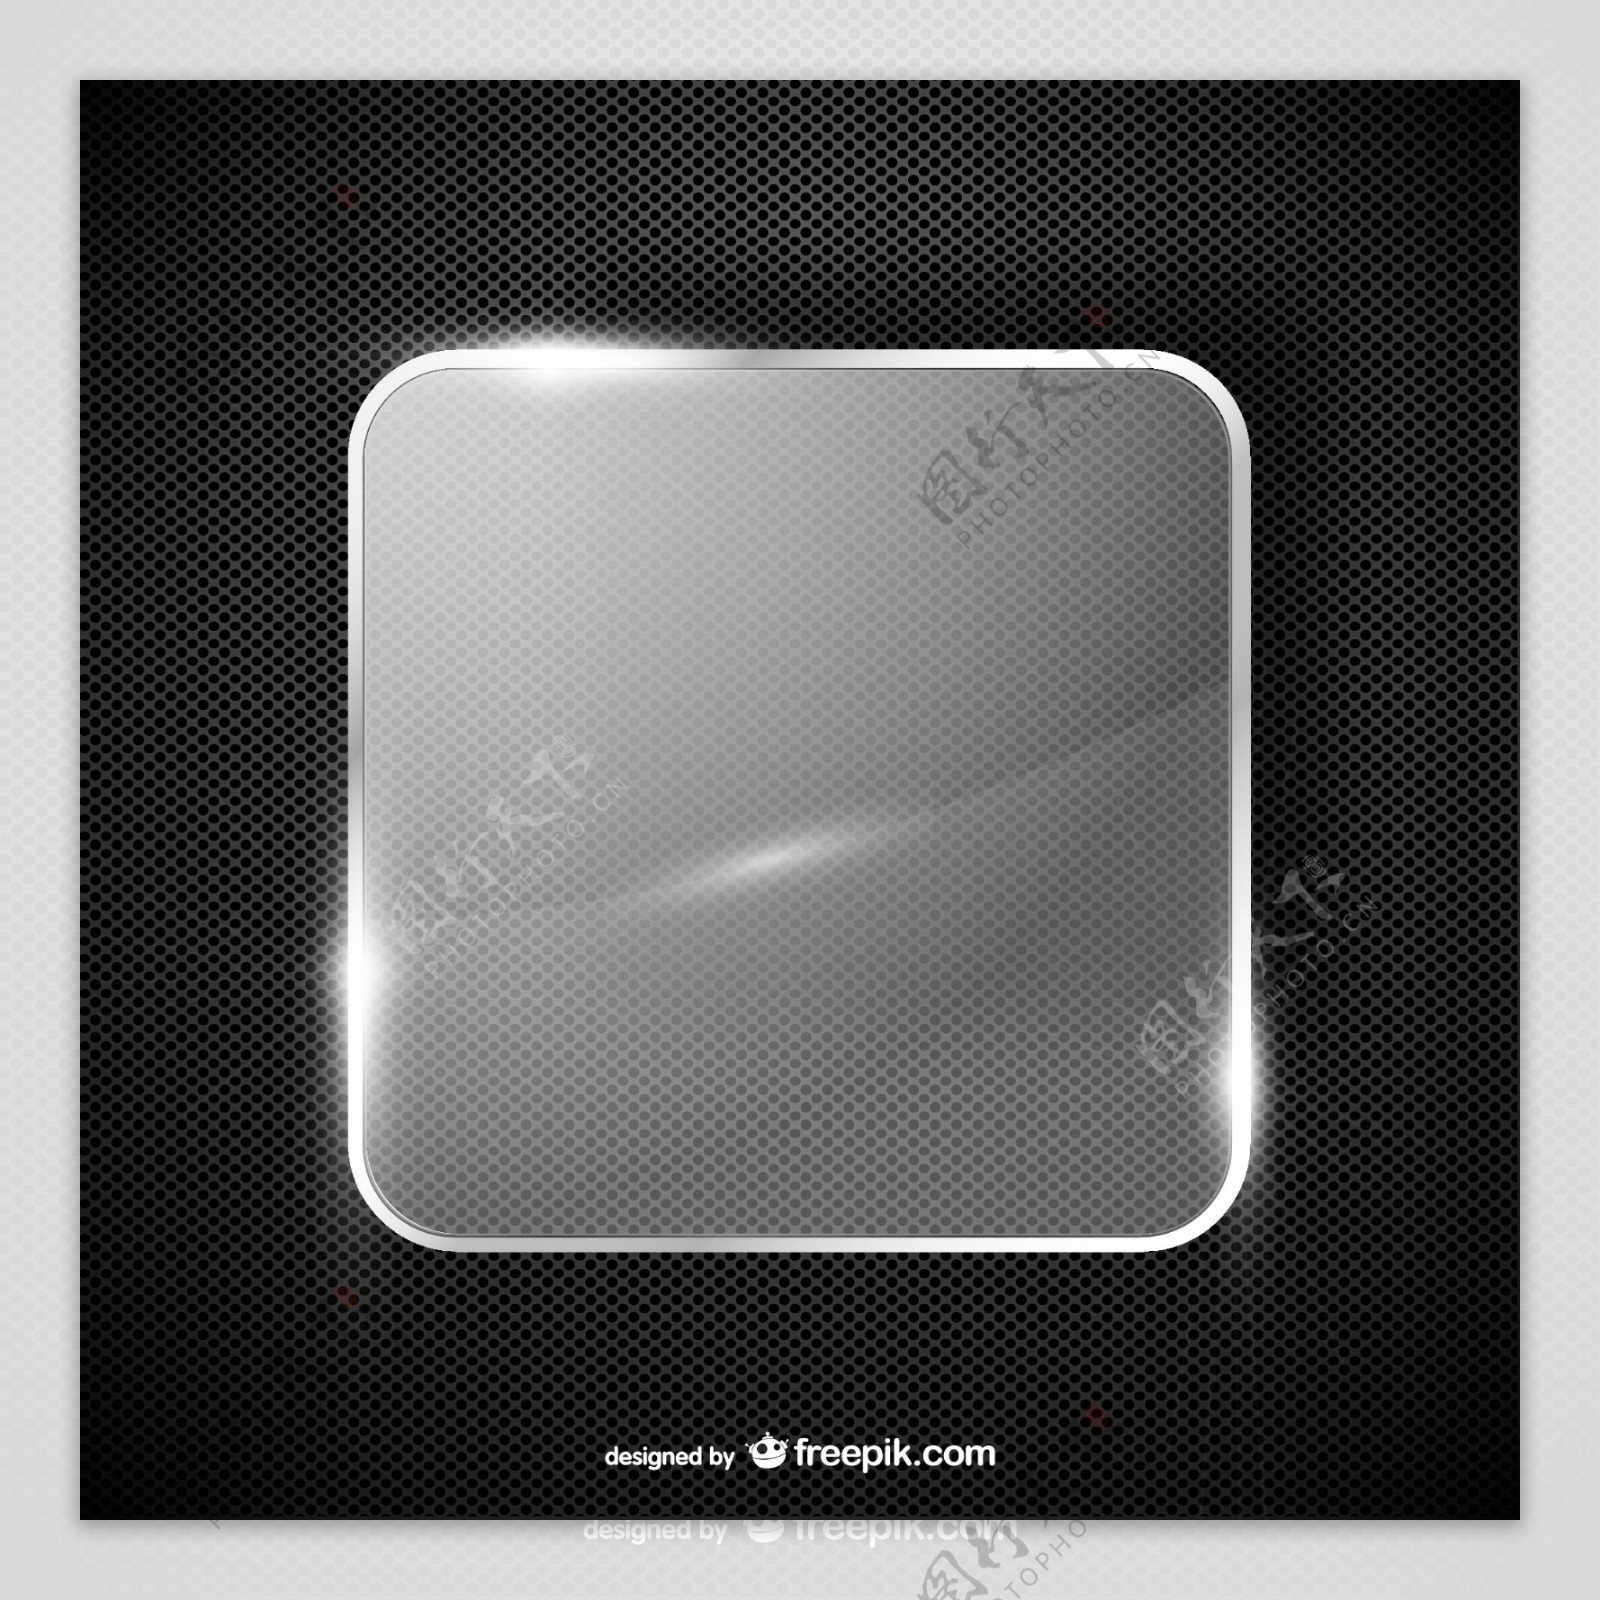 方形玻璃标签金属背景矢量素材图片